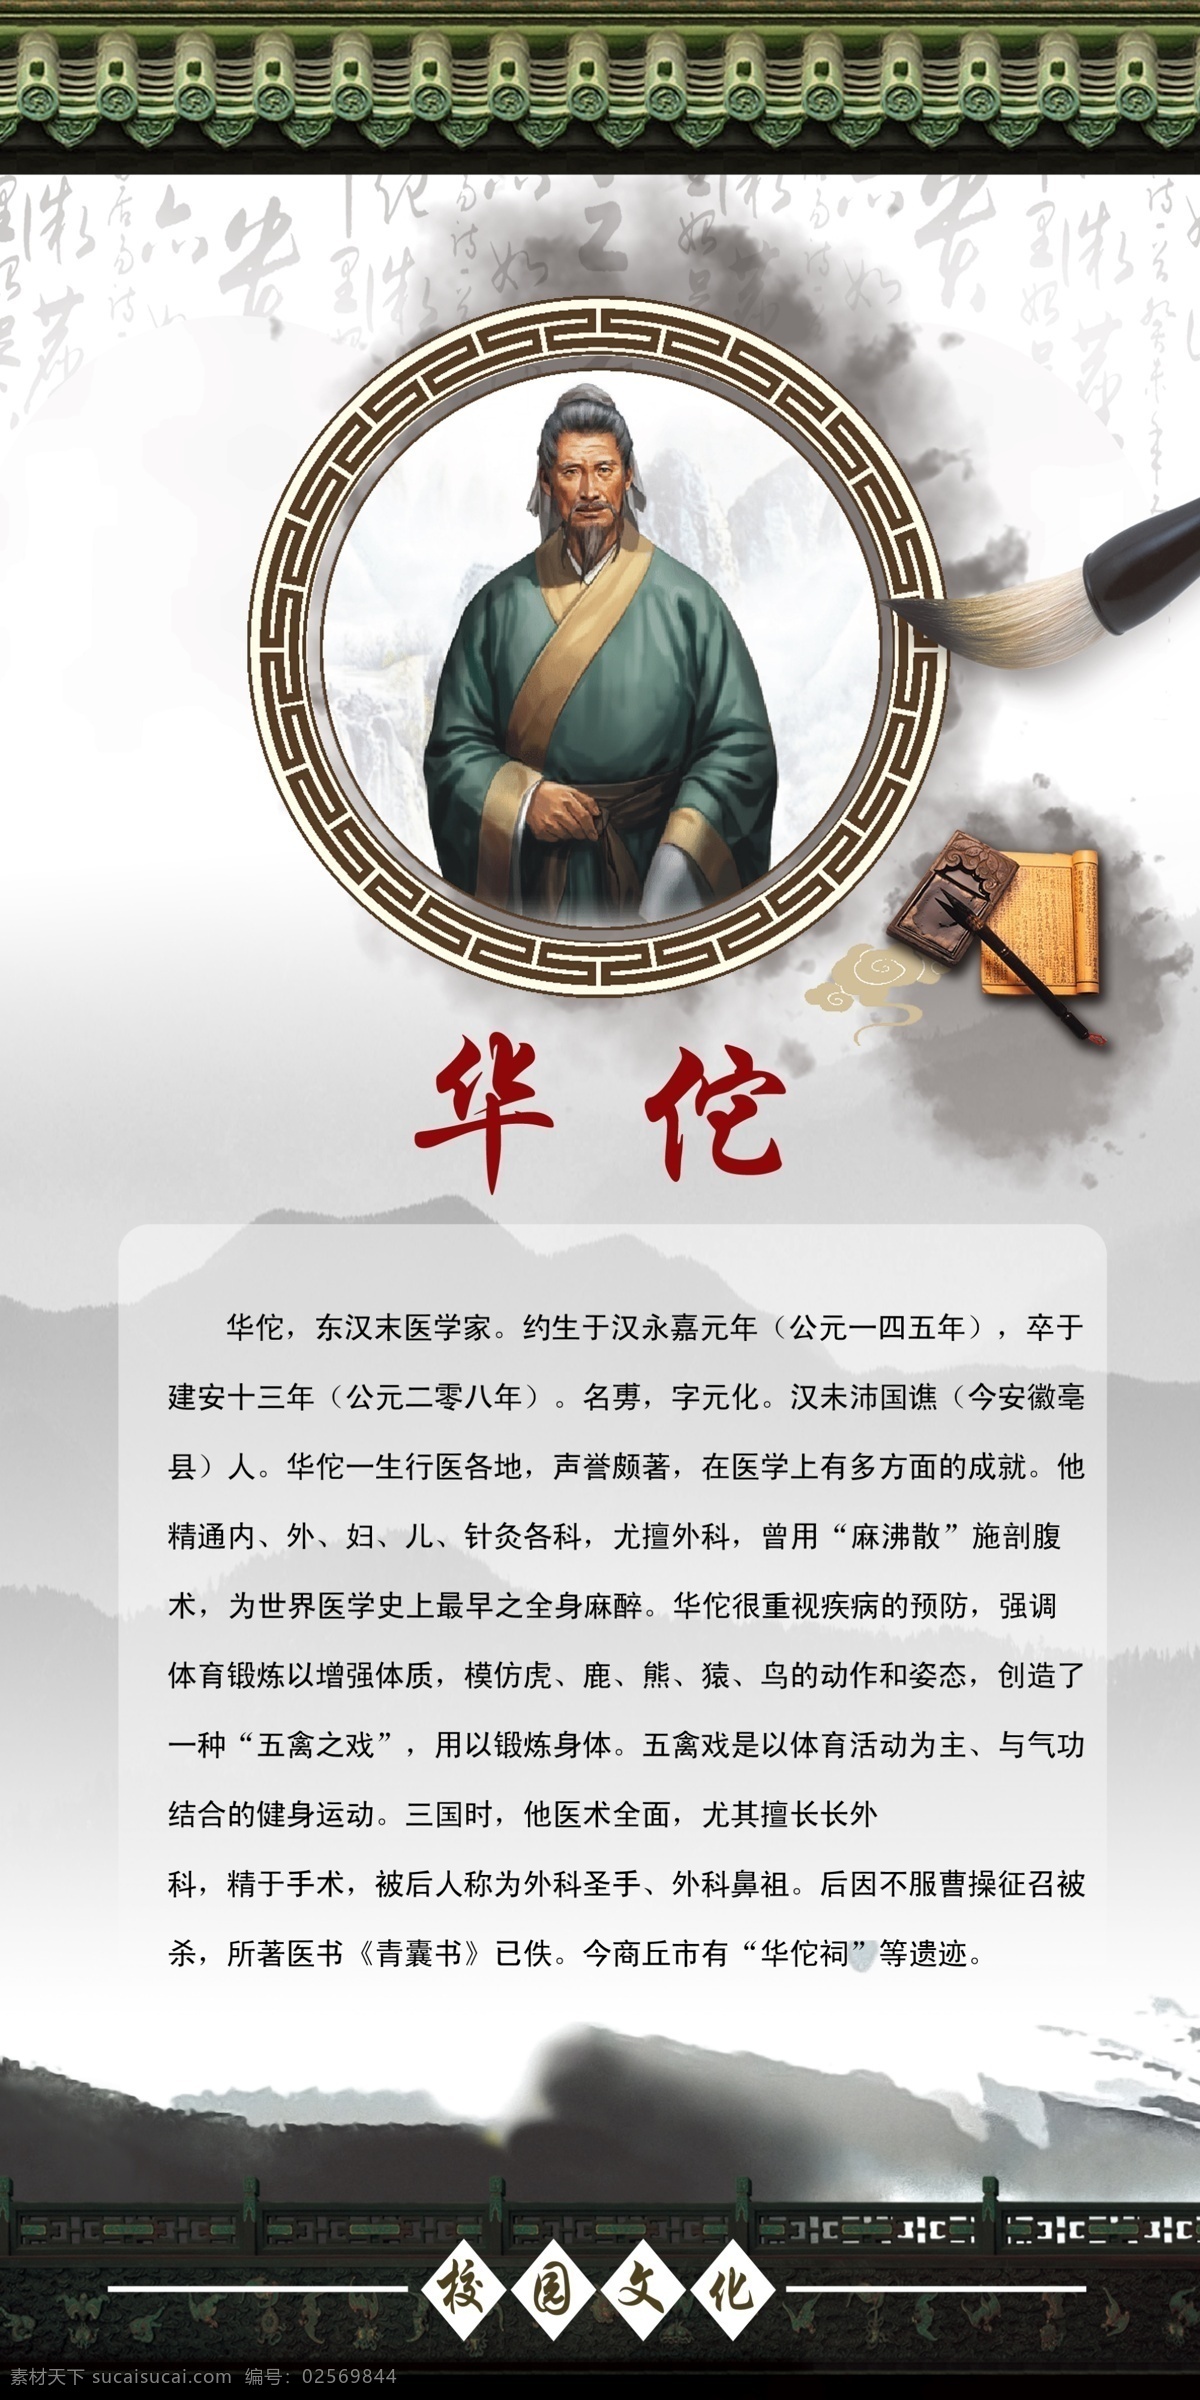 历史名医华佗 古代名人 名人名言 历史人物 文学家 科学家 历史学家 历史名人 名医华佗